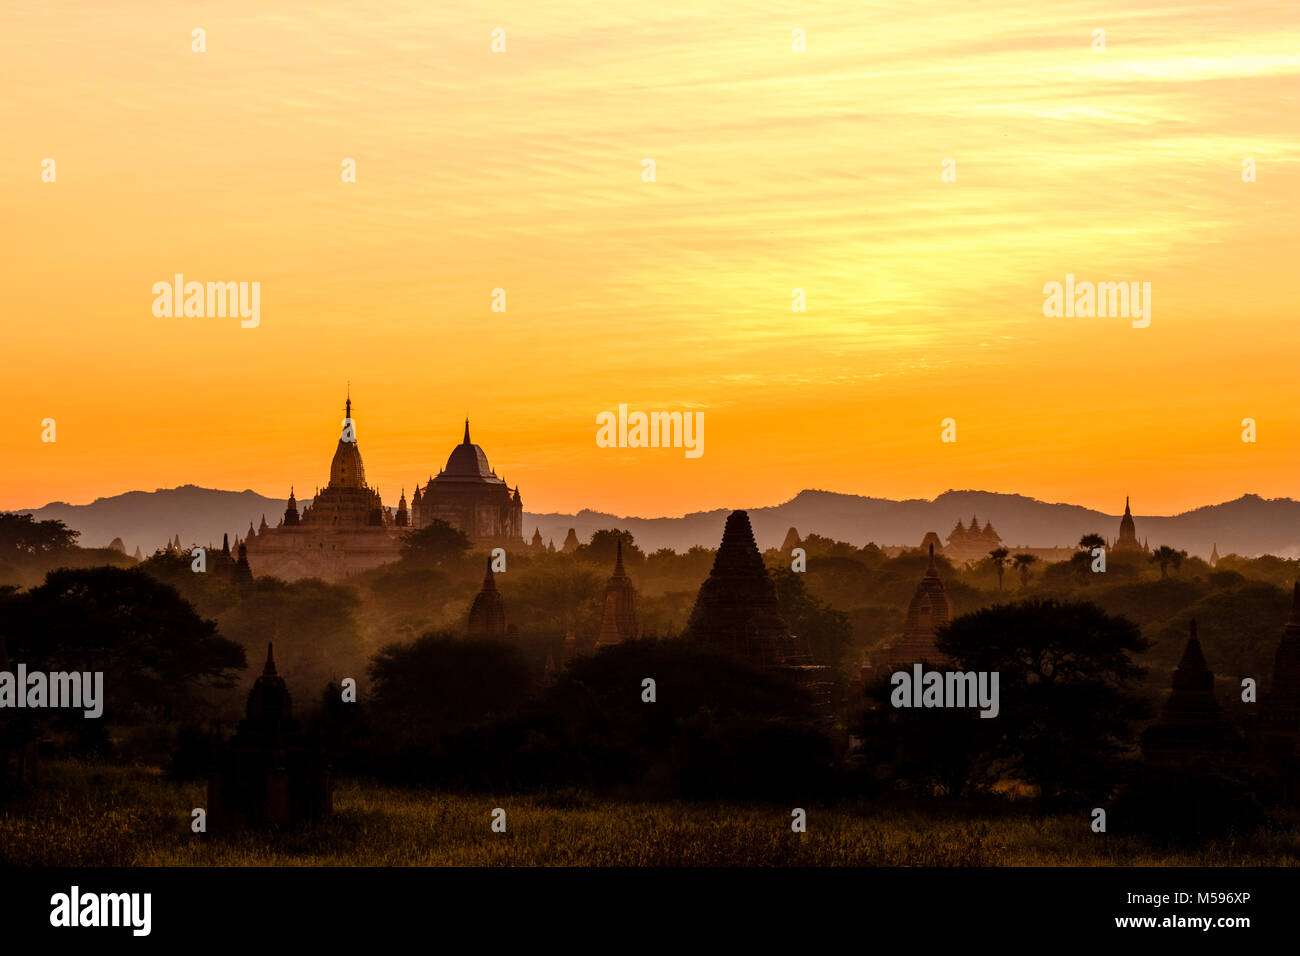 Thatbyinnyu und Ananda Tempel, Pagoden von Bagan in den nebligen Ebenen der archäologischen Stätte nach Sonnenuntergang Stockfoto